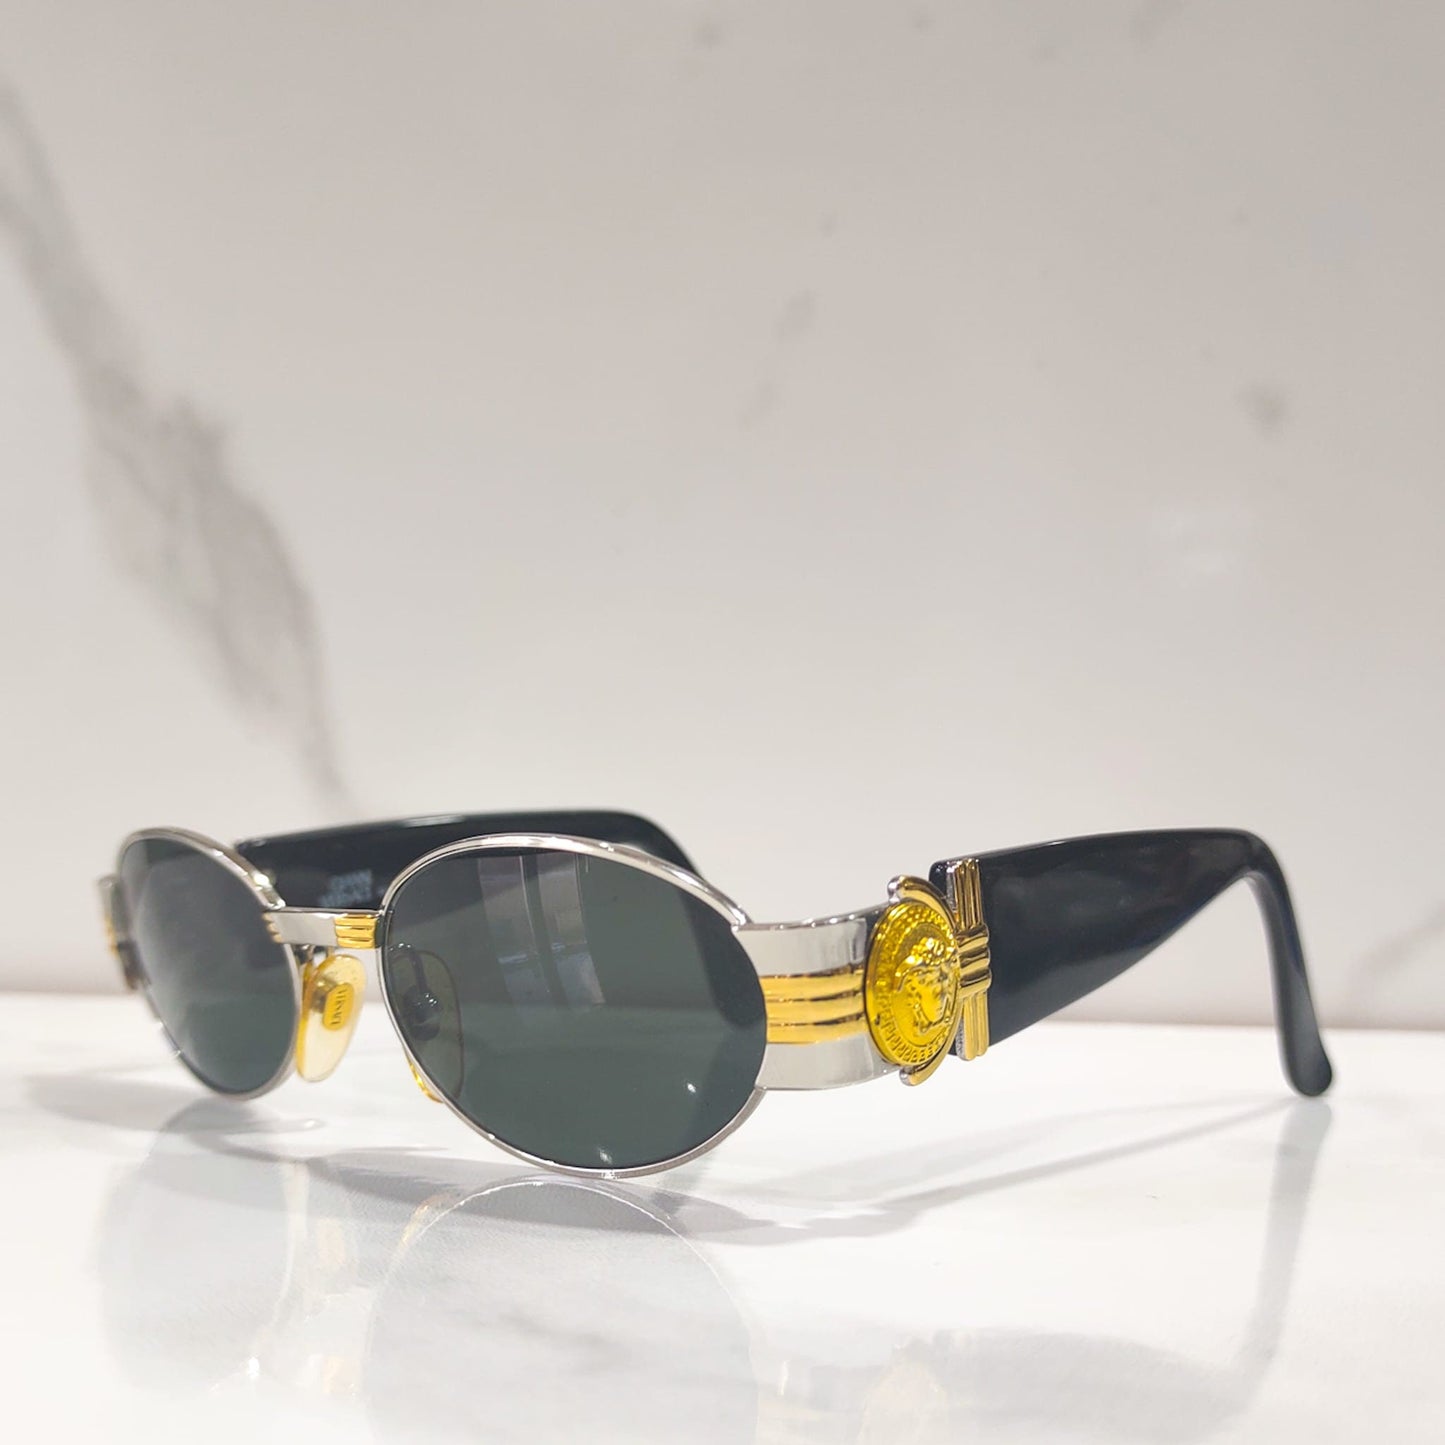 Gianni Versace mod s 72 occhiali da sole vintage lunetta brille lenti tonde anni '90